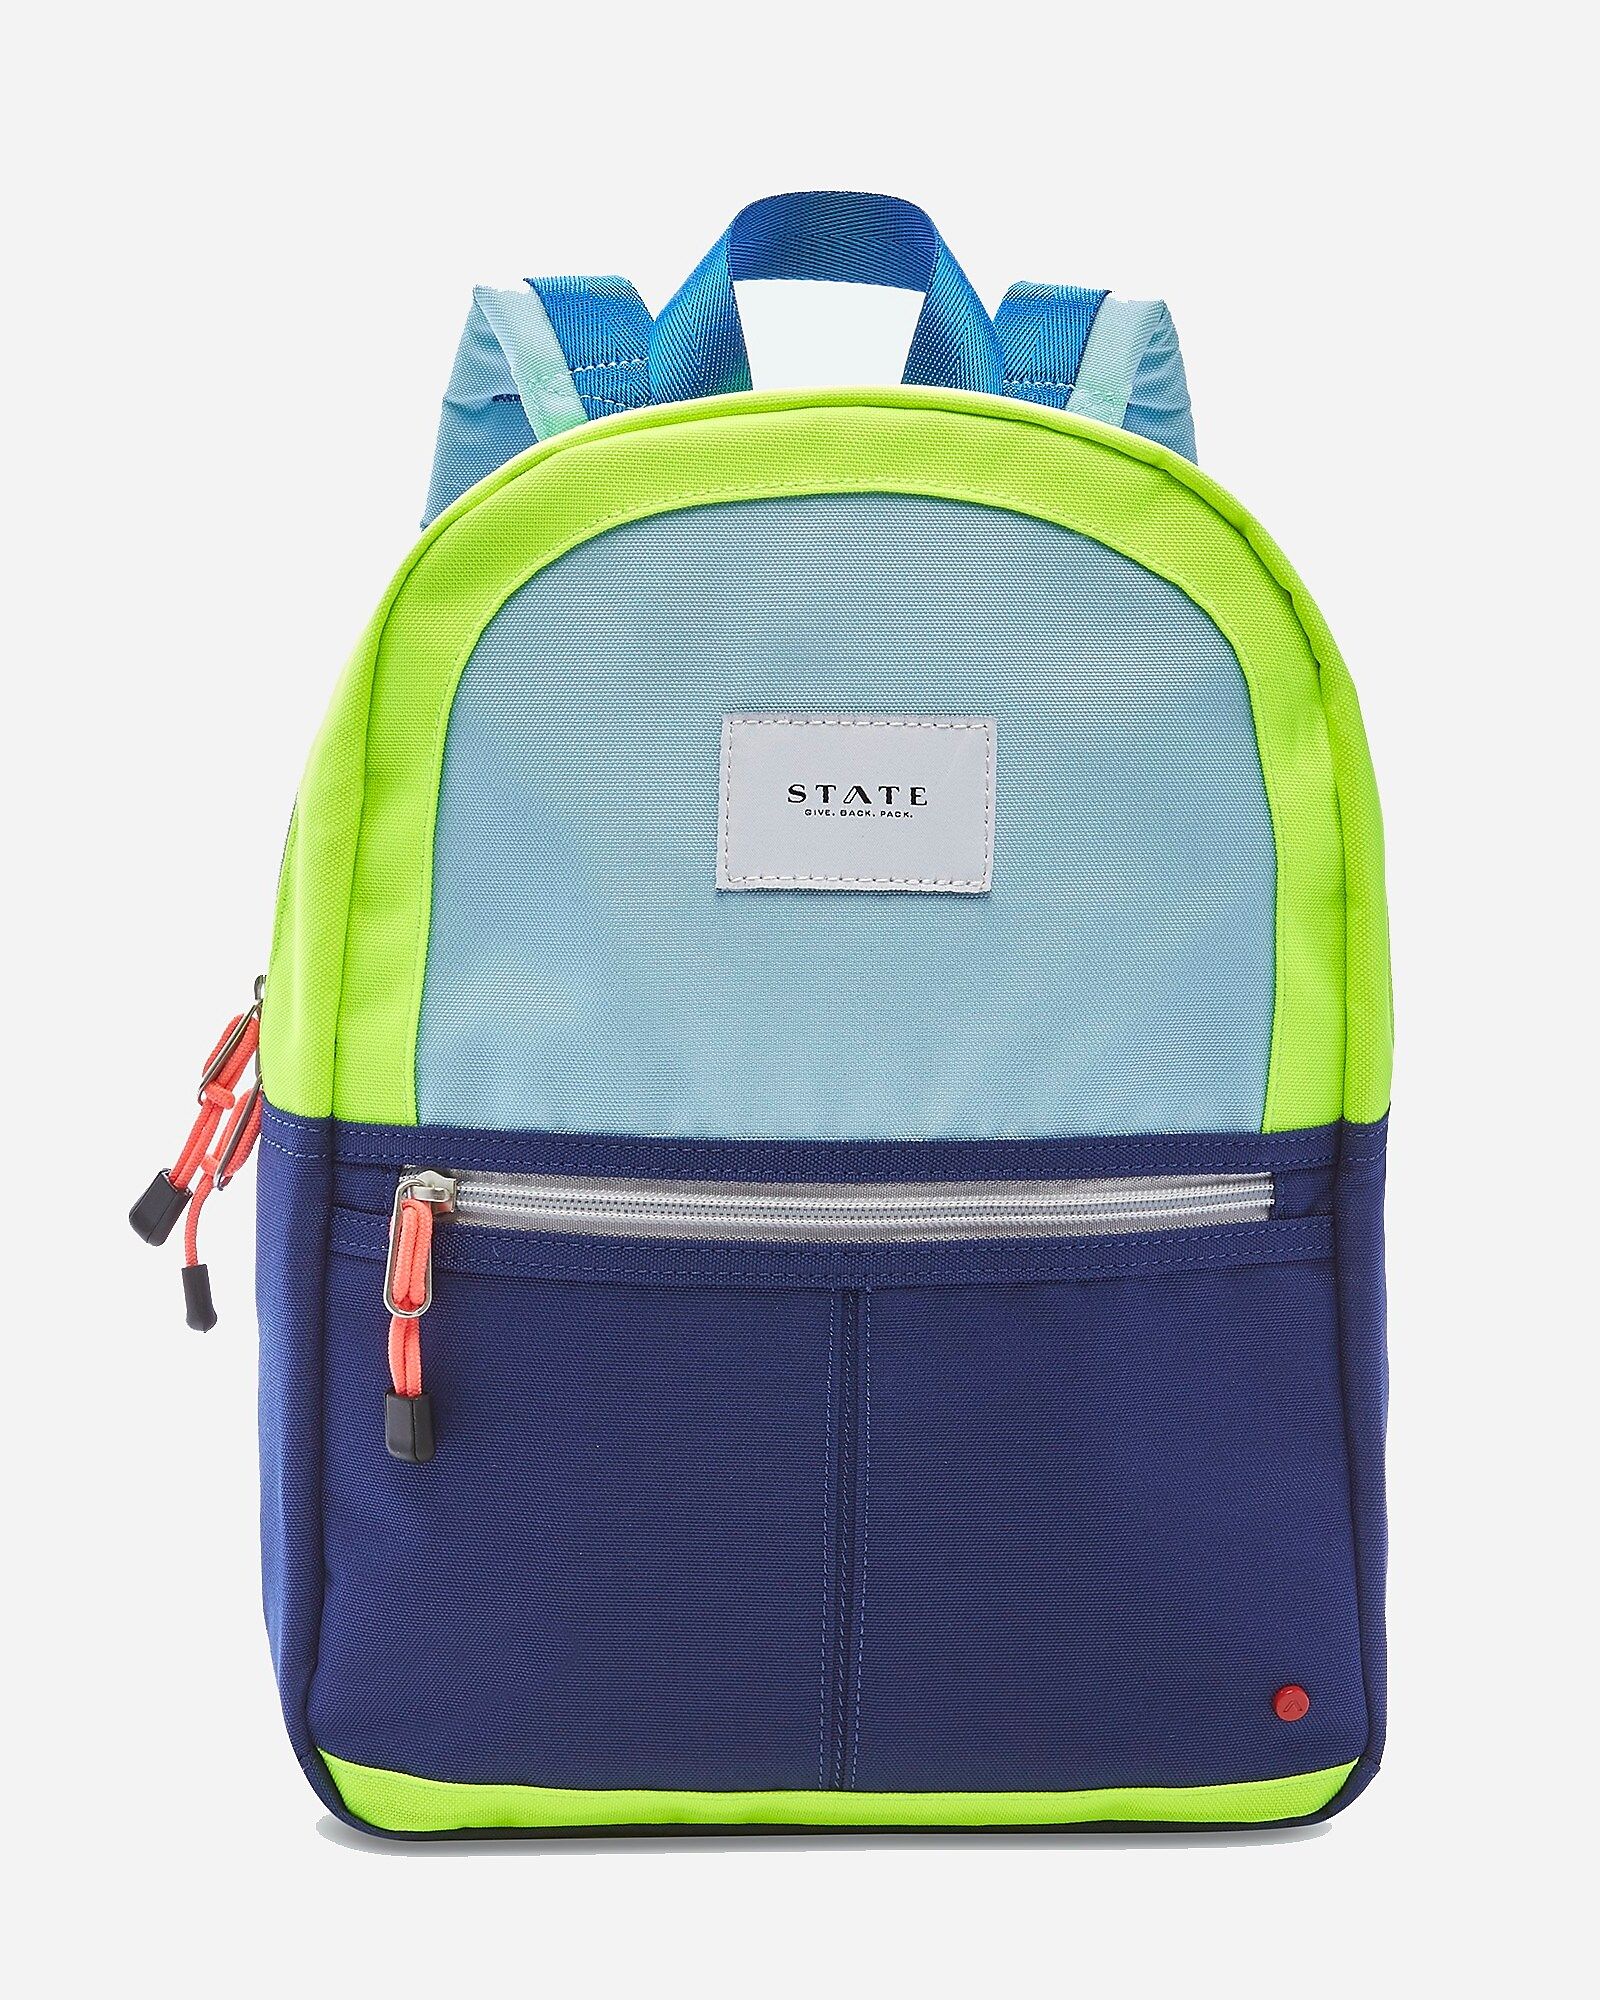 STATE Bags Kane kids' mini backpack | J.Crew US